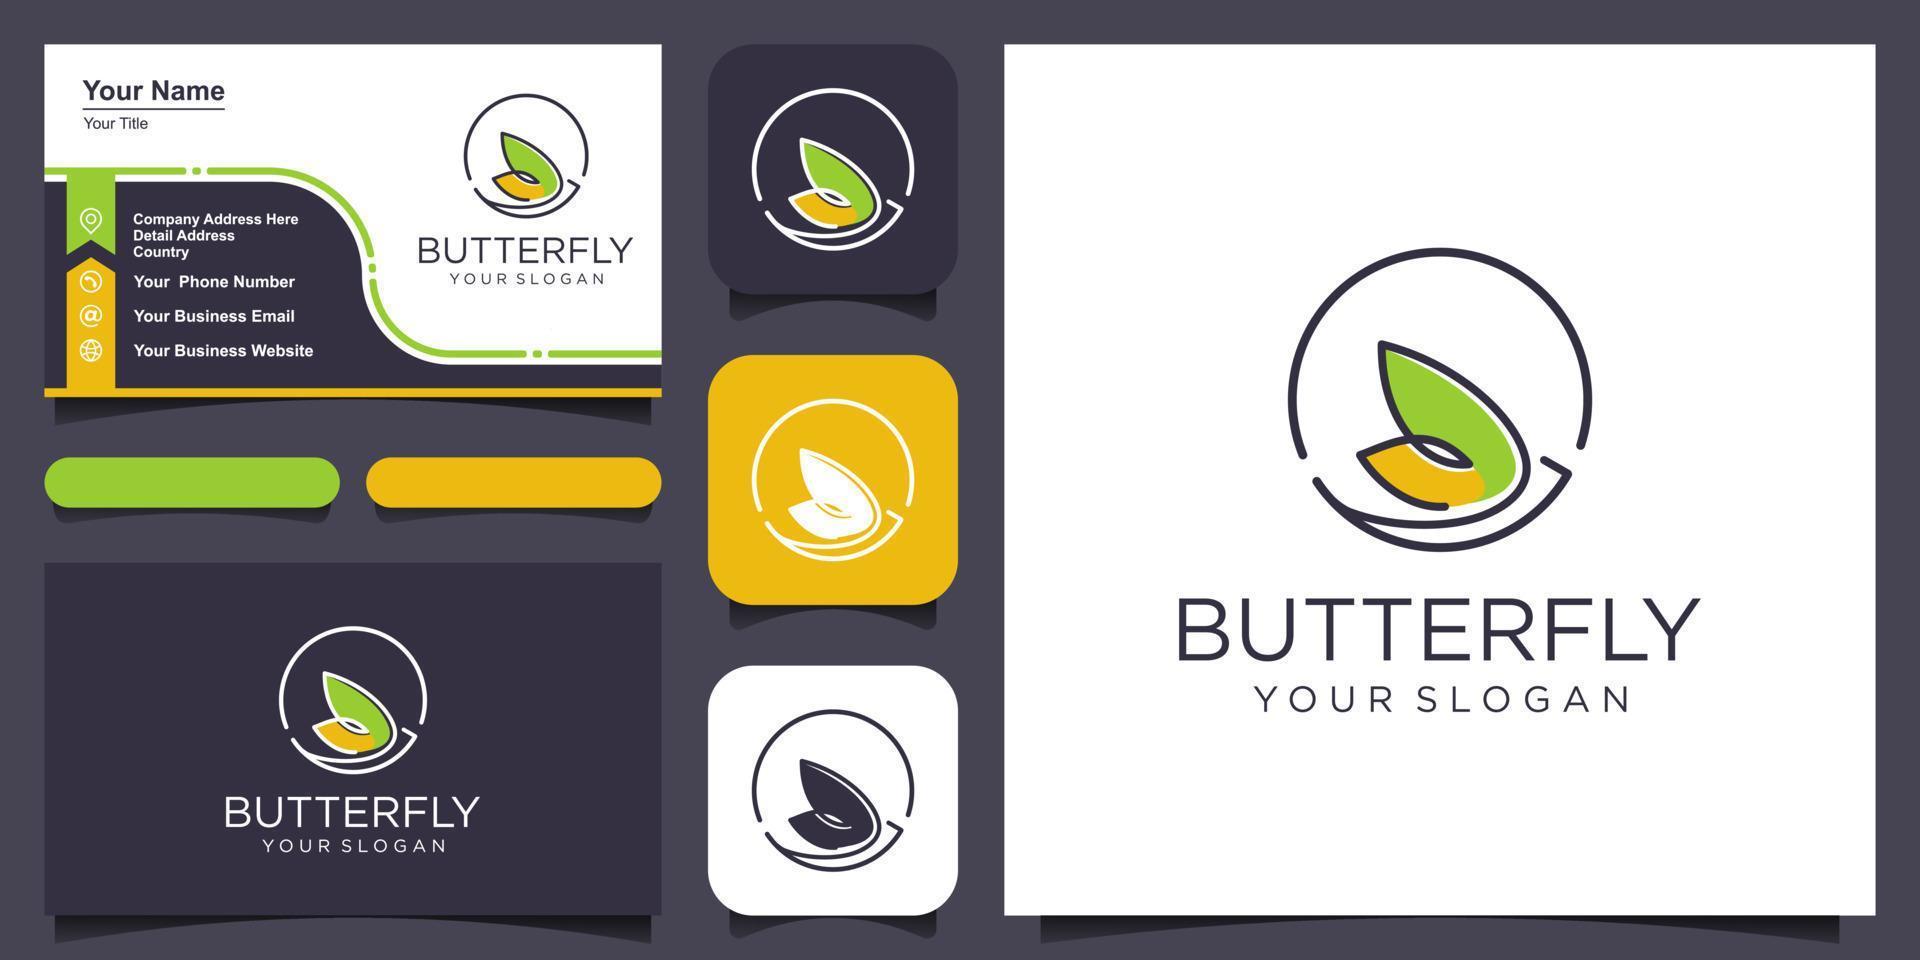 vettore farfalla astratto logo design